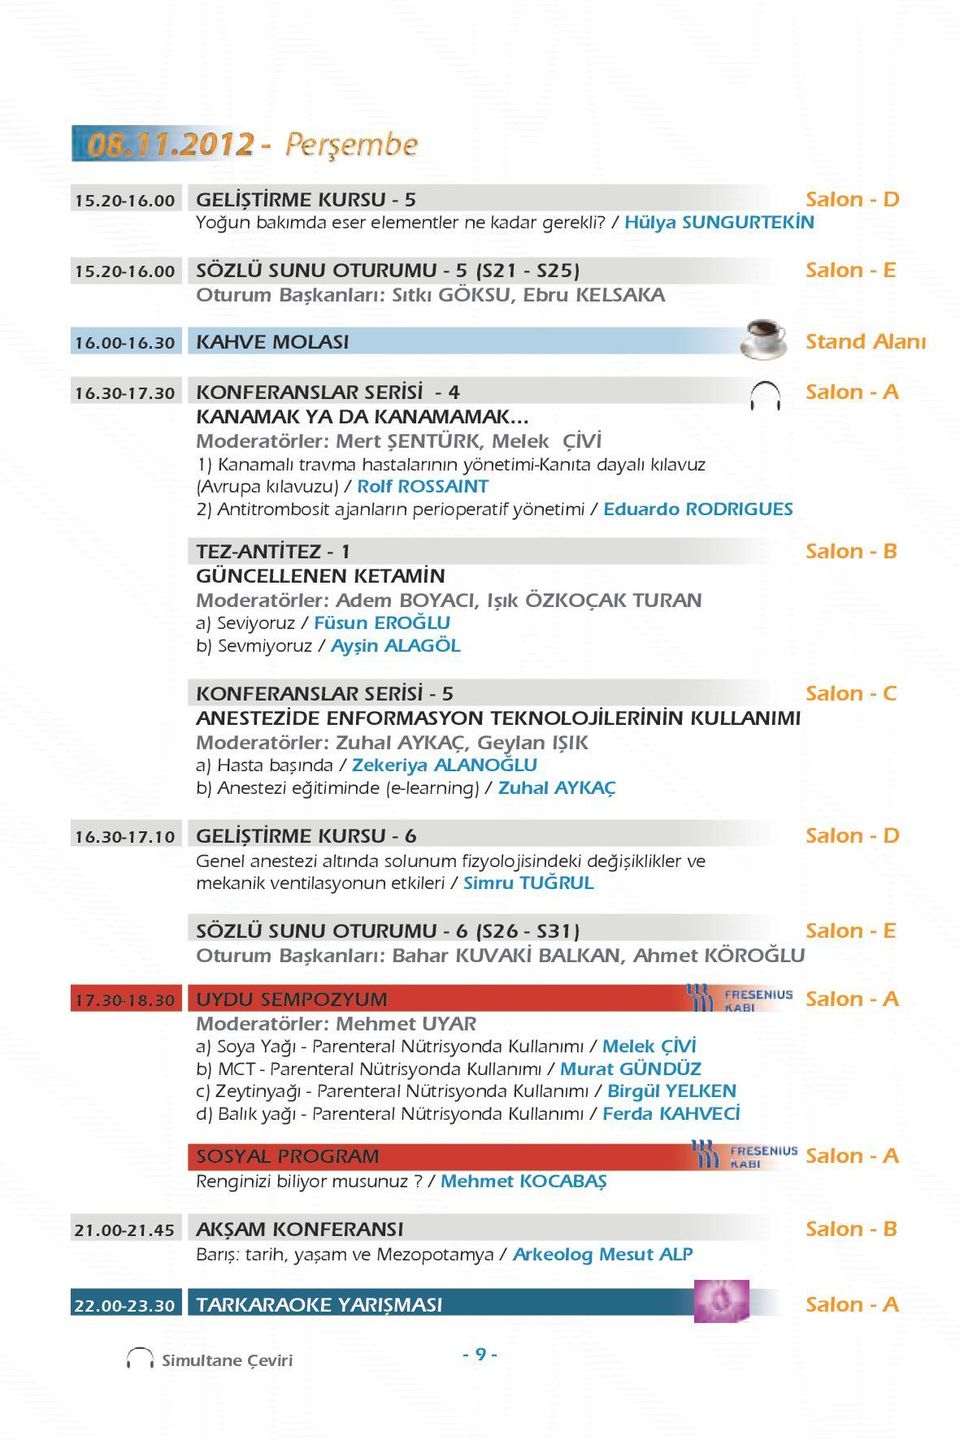 .. Moderatörler: Mert ŞENTÜRK, Melek ÇİVİ 1) Kanamalı travma hastalarının yönetimi-kanıta dayalı kılavuz (Avrupa kılavuzu) / Rolf ROSSAINT 2) Antitrombosit ajanların perioperatif yönetimi / Eduardo